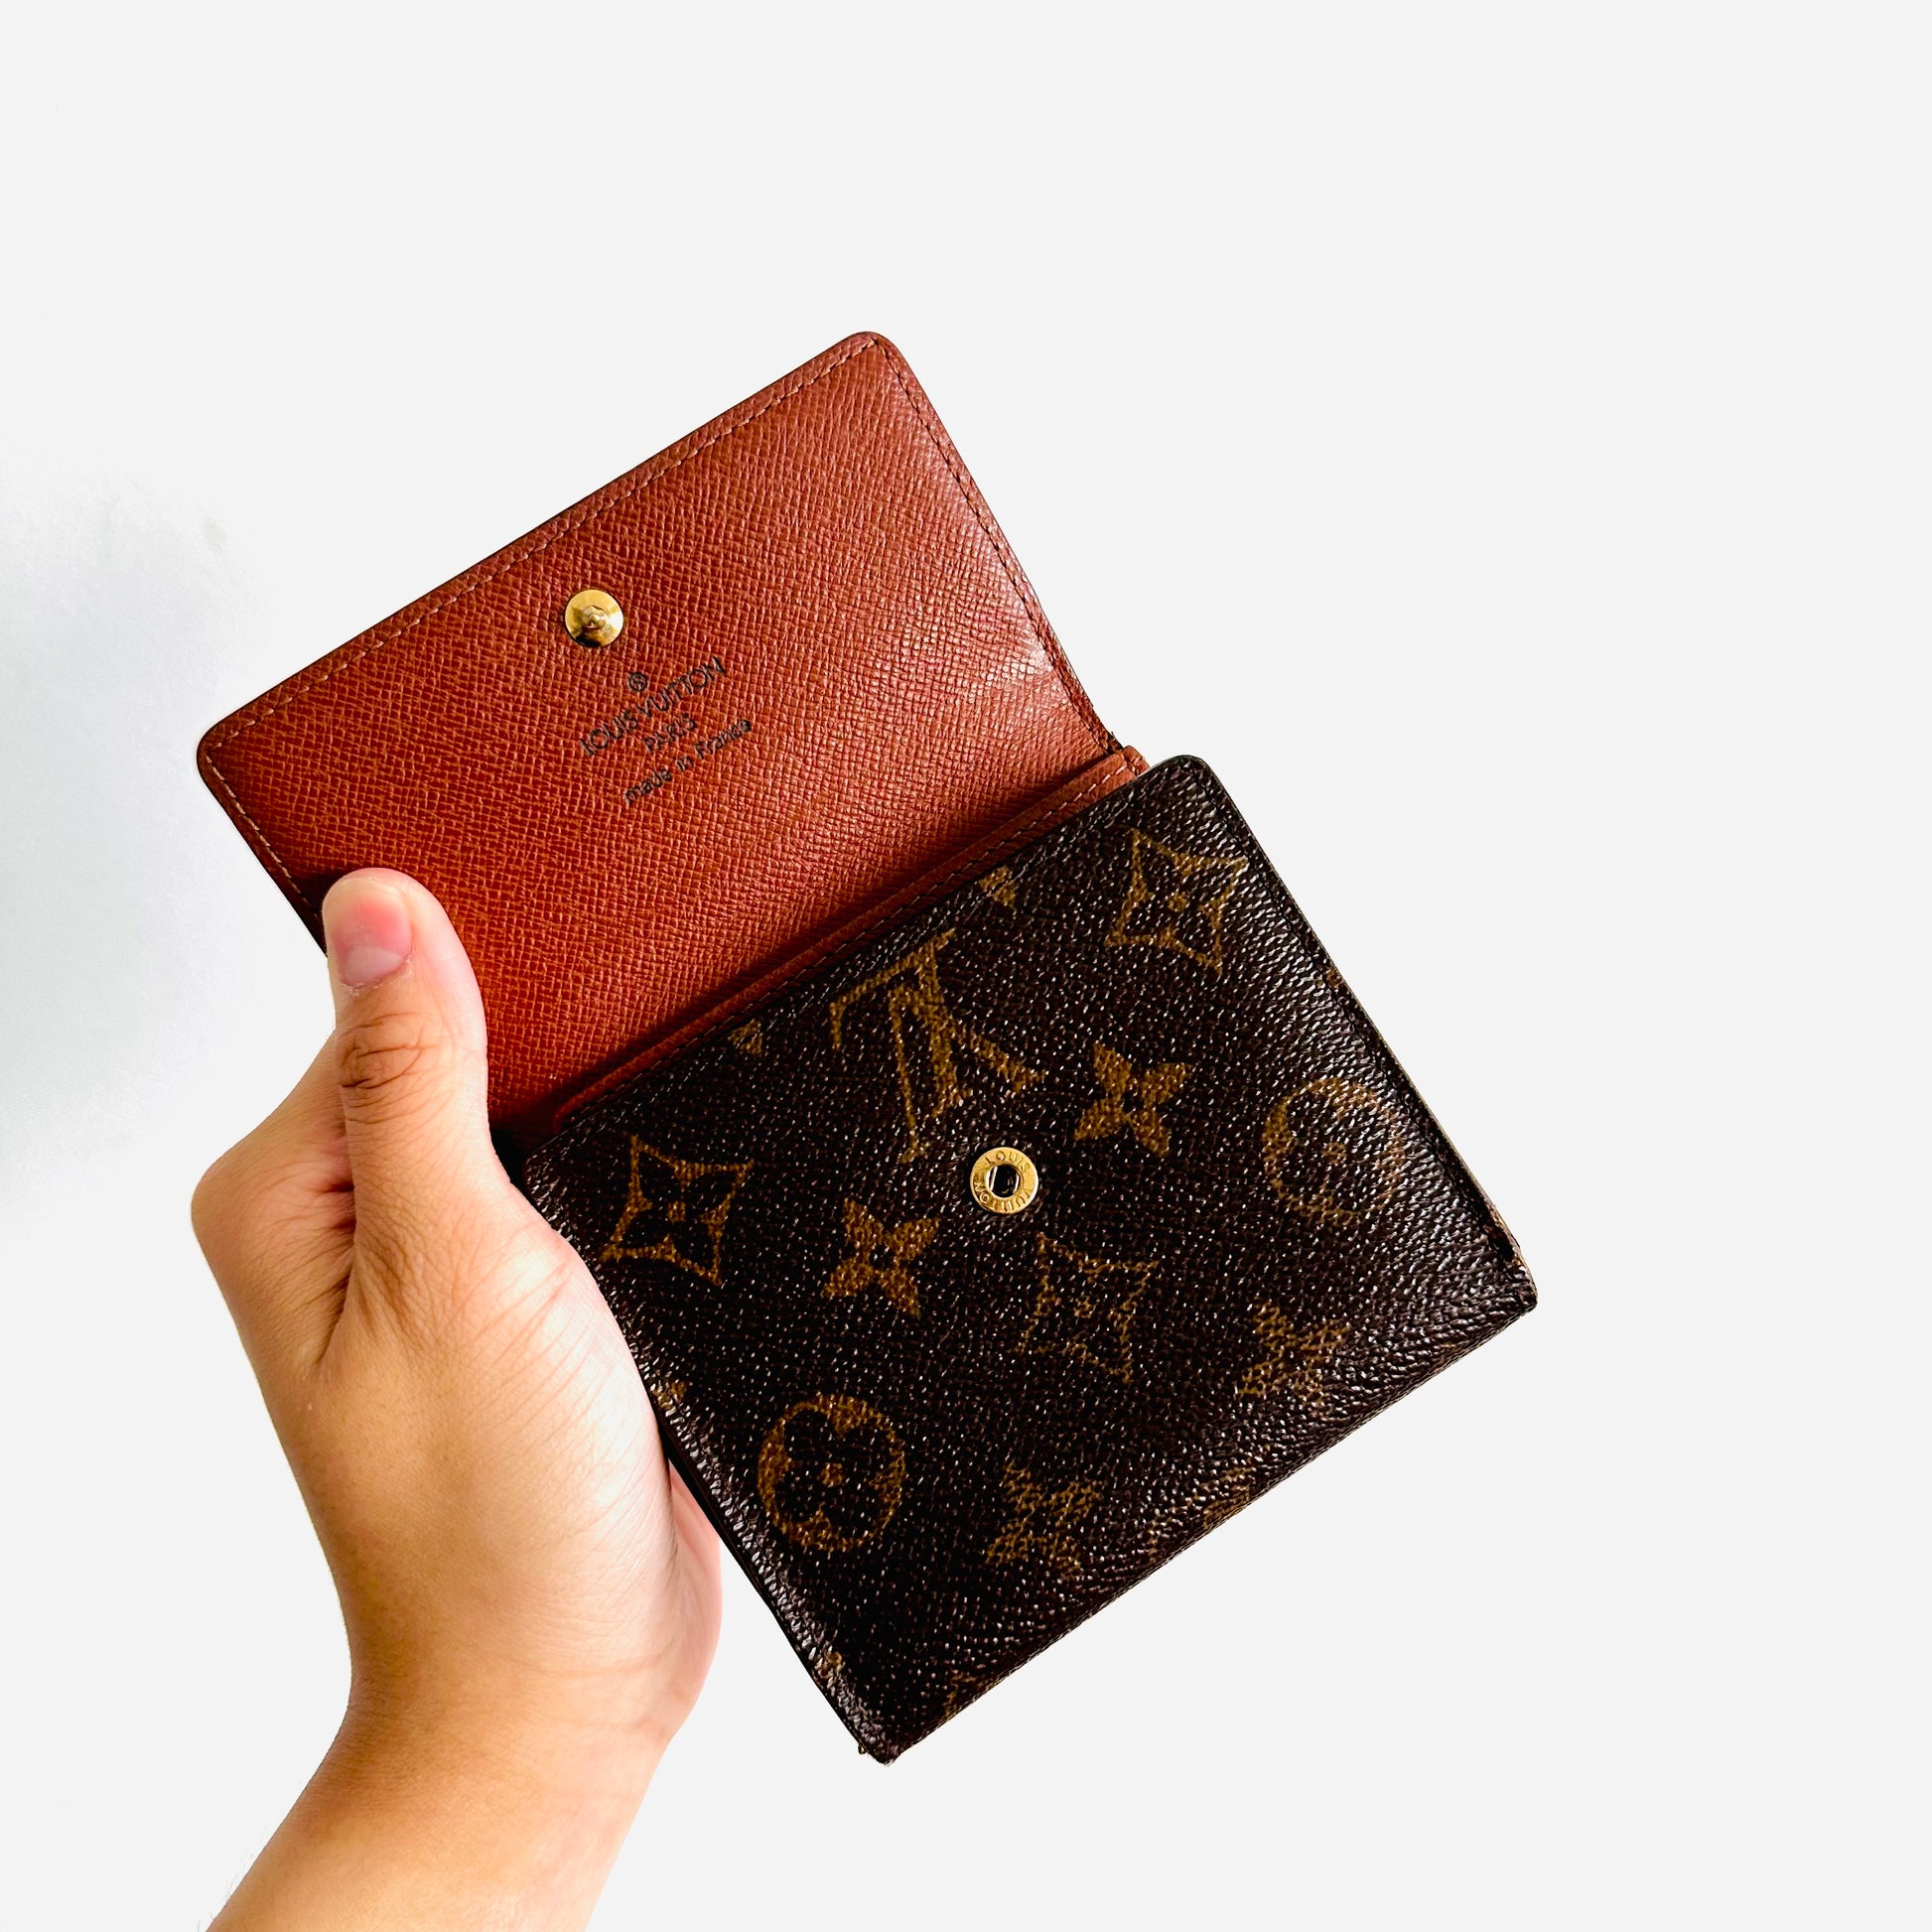 Louis Vuitton 16LK0120 Monogram Elise Compact Trifold Wallet